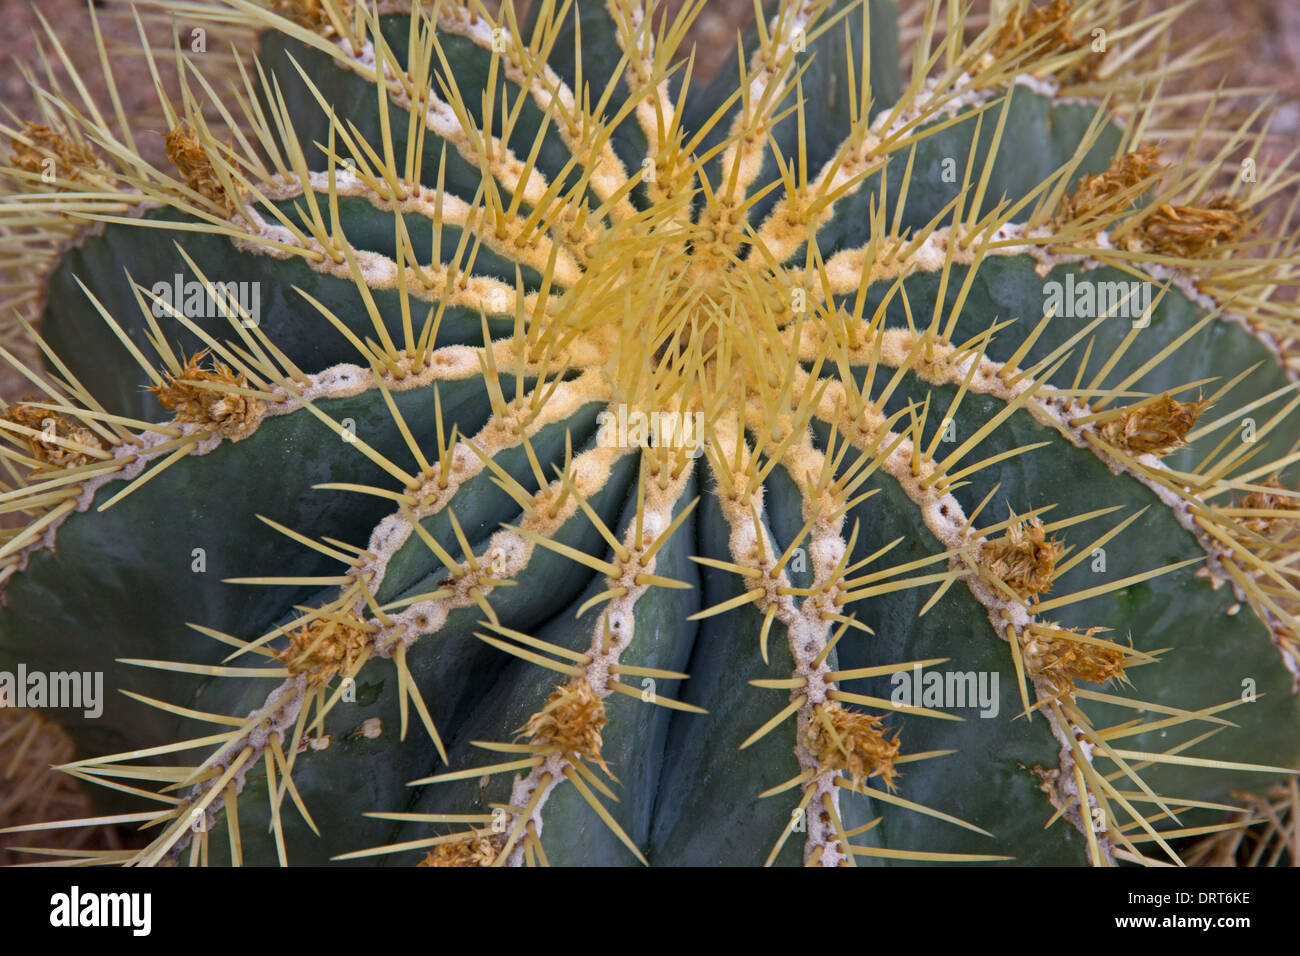 Dettaglio della canna Glaucous Cactus (Ferocactus Glaucescens) Foto Stock